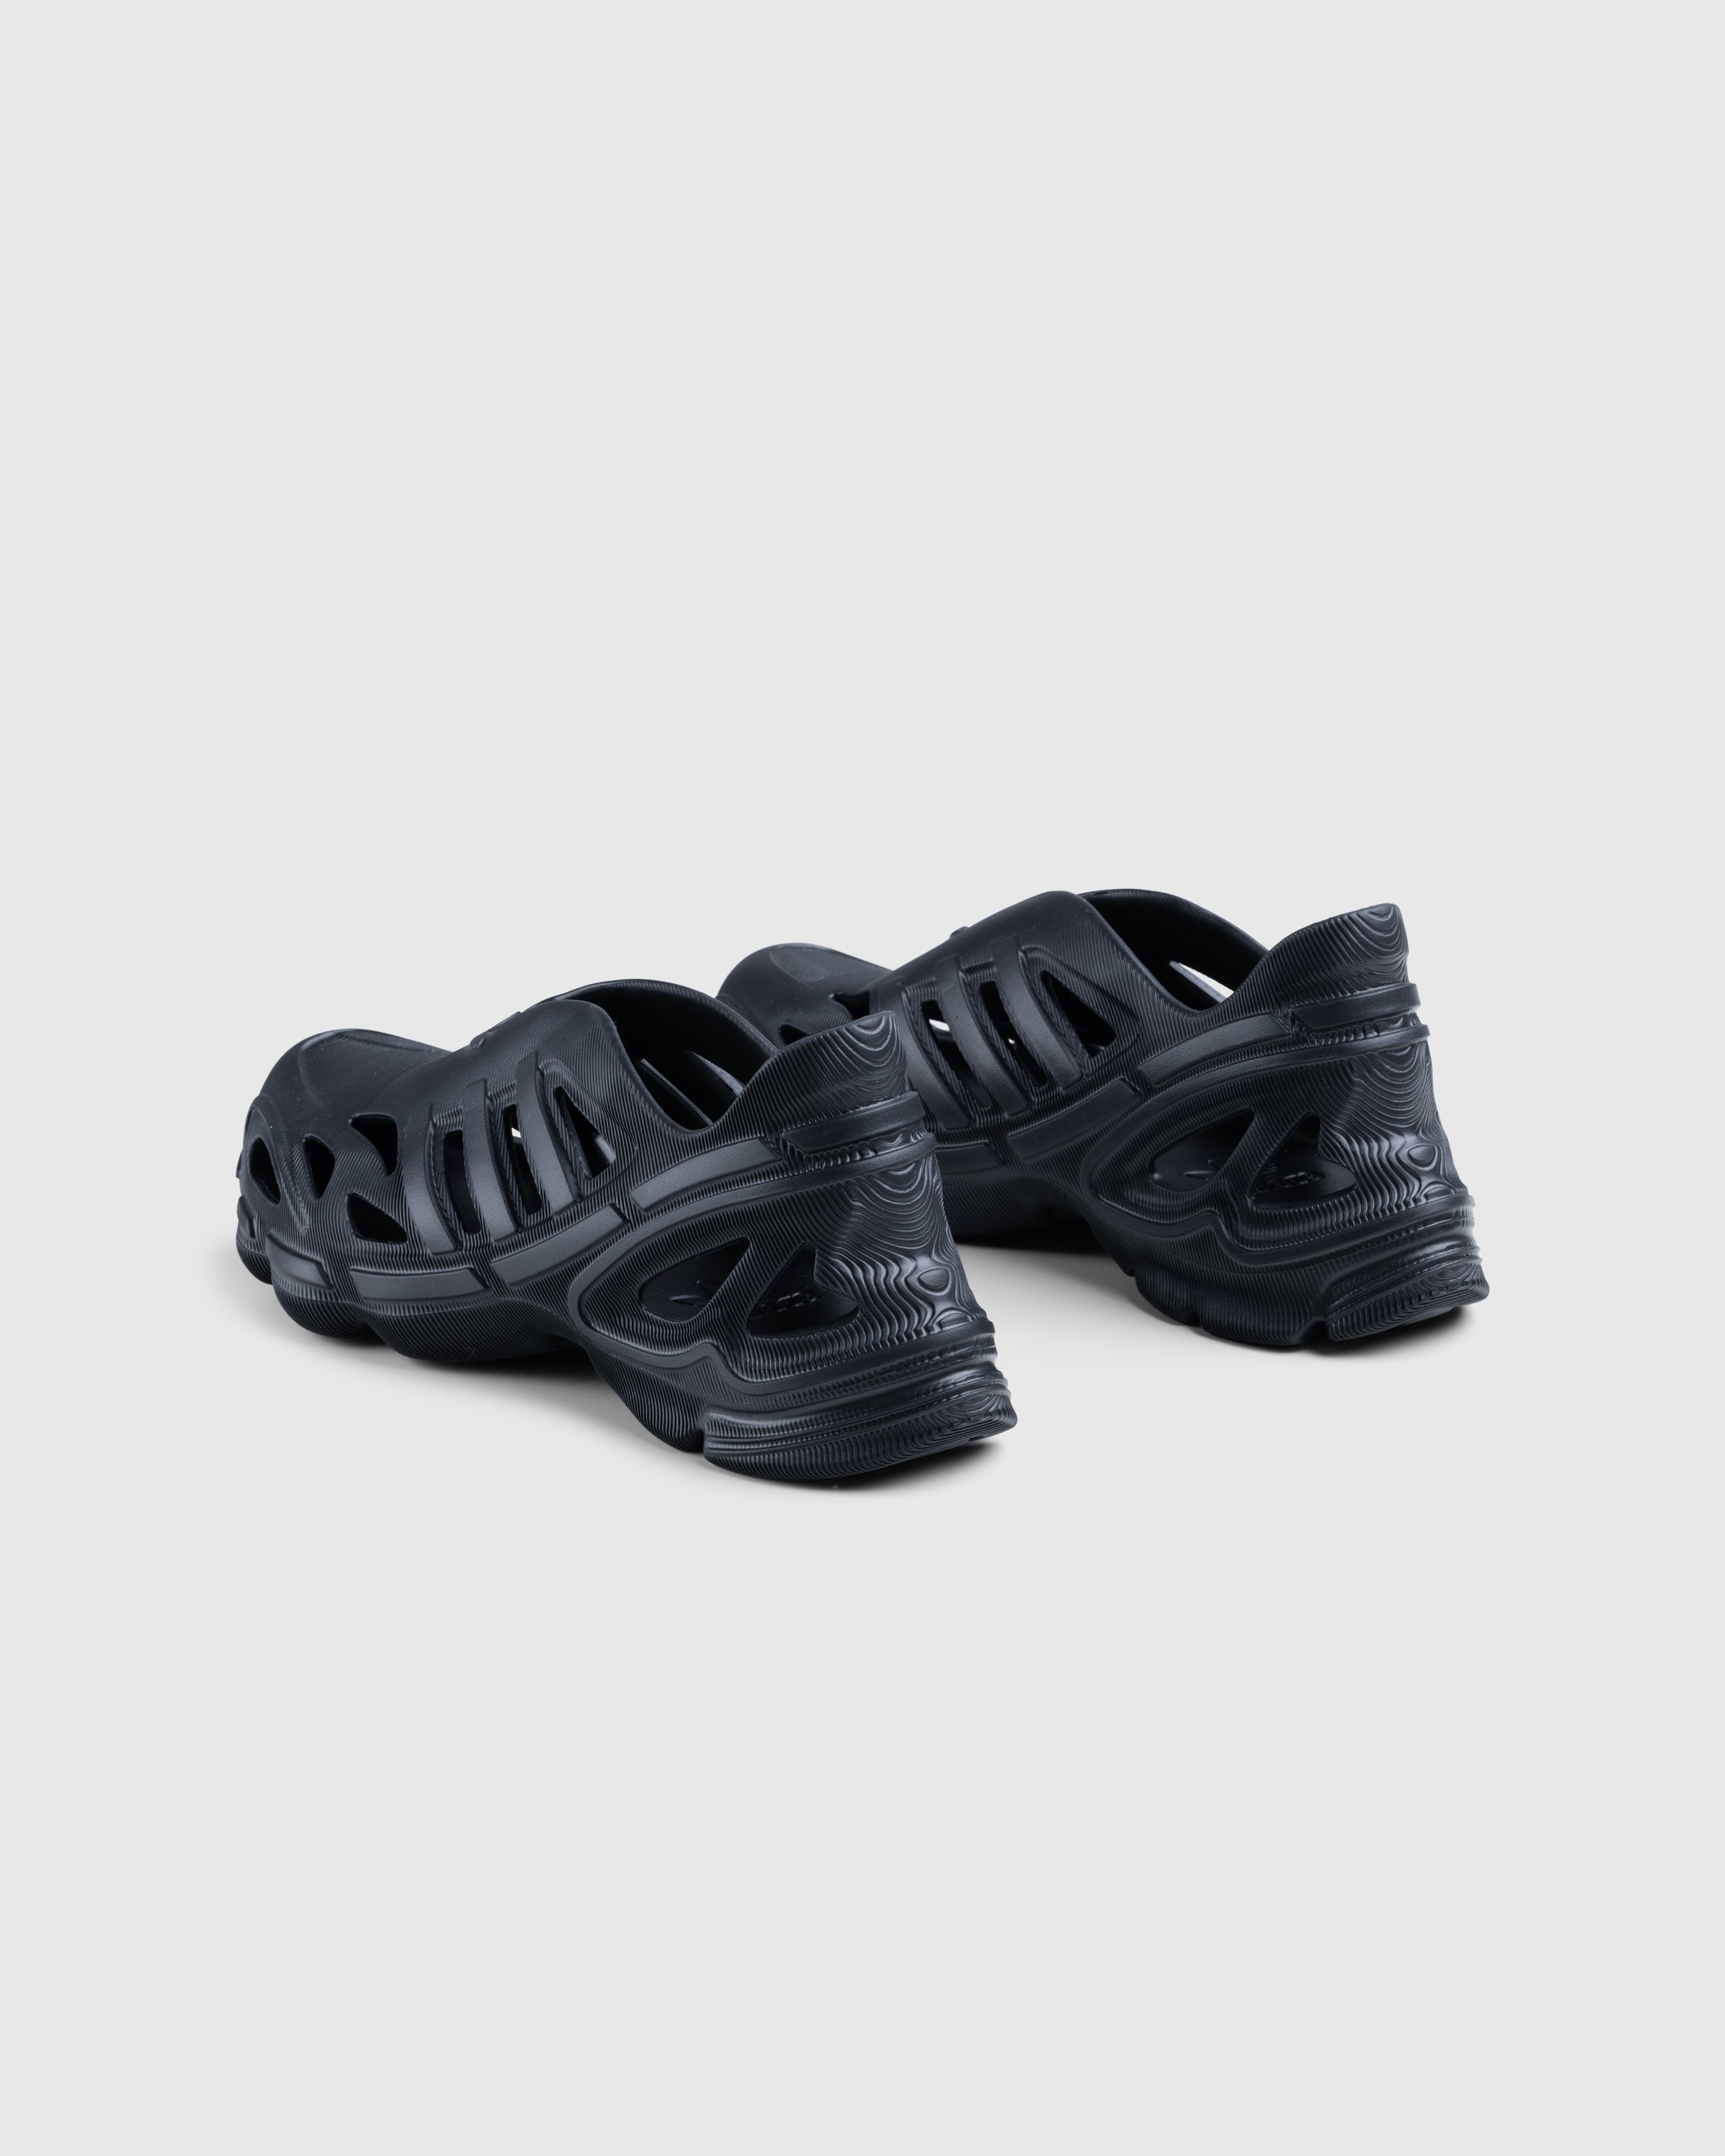 Adidas - Adifom Supernova Core Black - Footwear - Black - Image 4